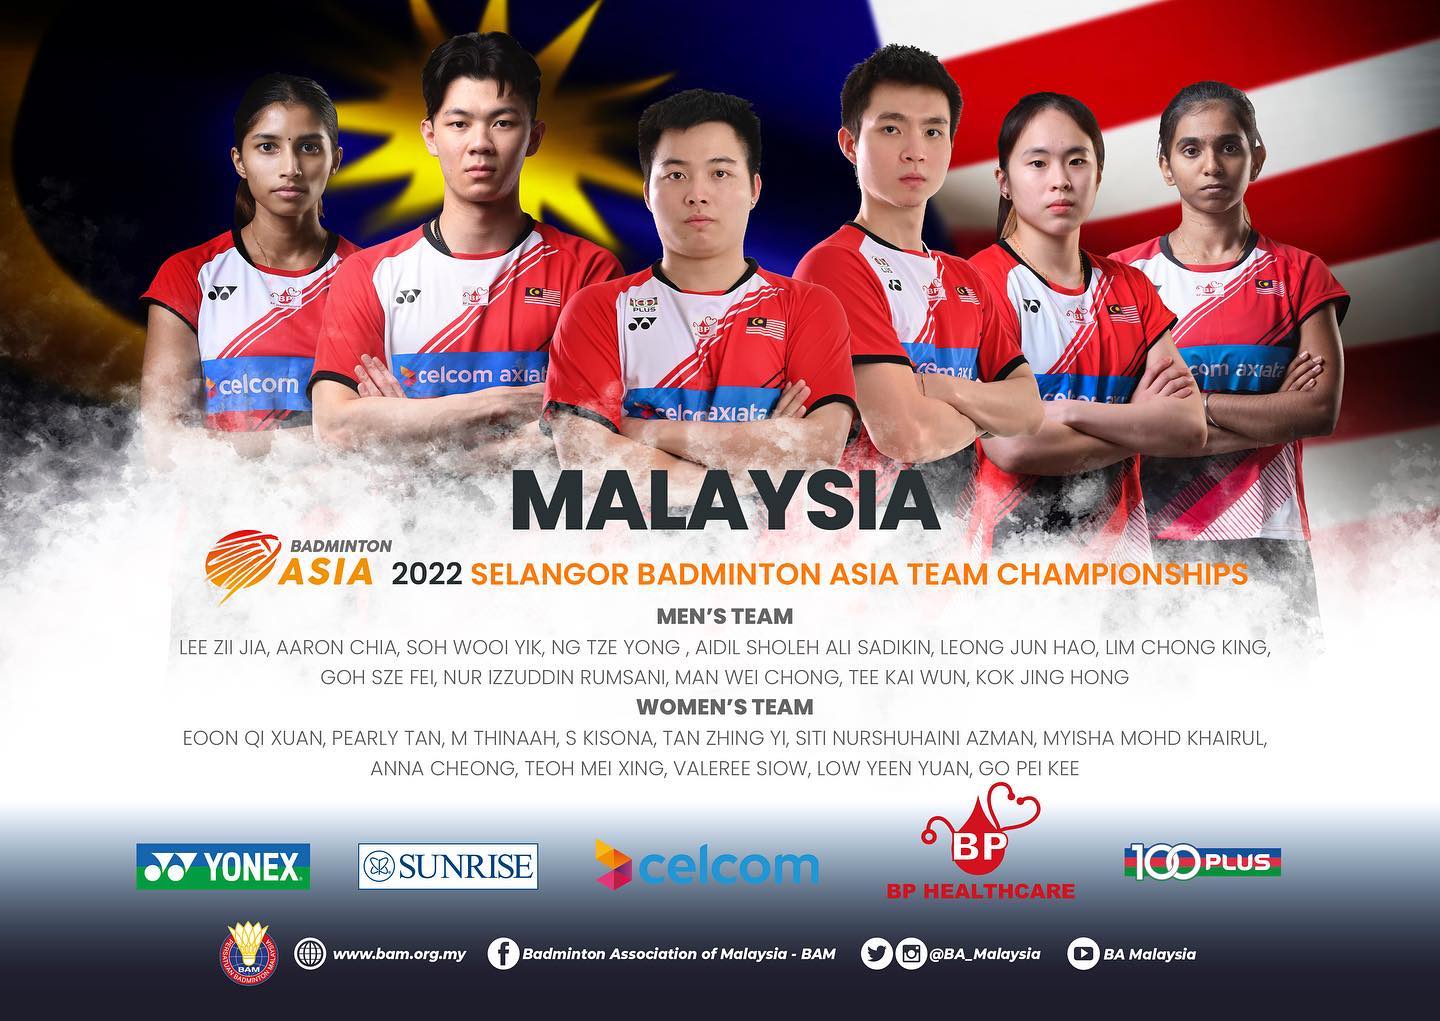 Lee Zii Jia tham dự giải cầu lông vô địch châu Á 2022 cùng đội tuyển Malaysia - Ảnh 2